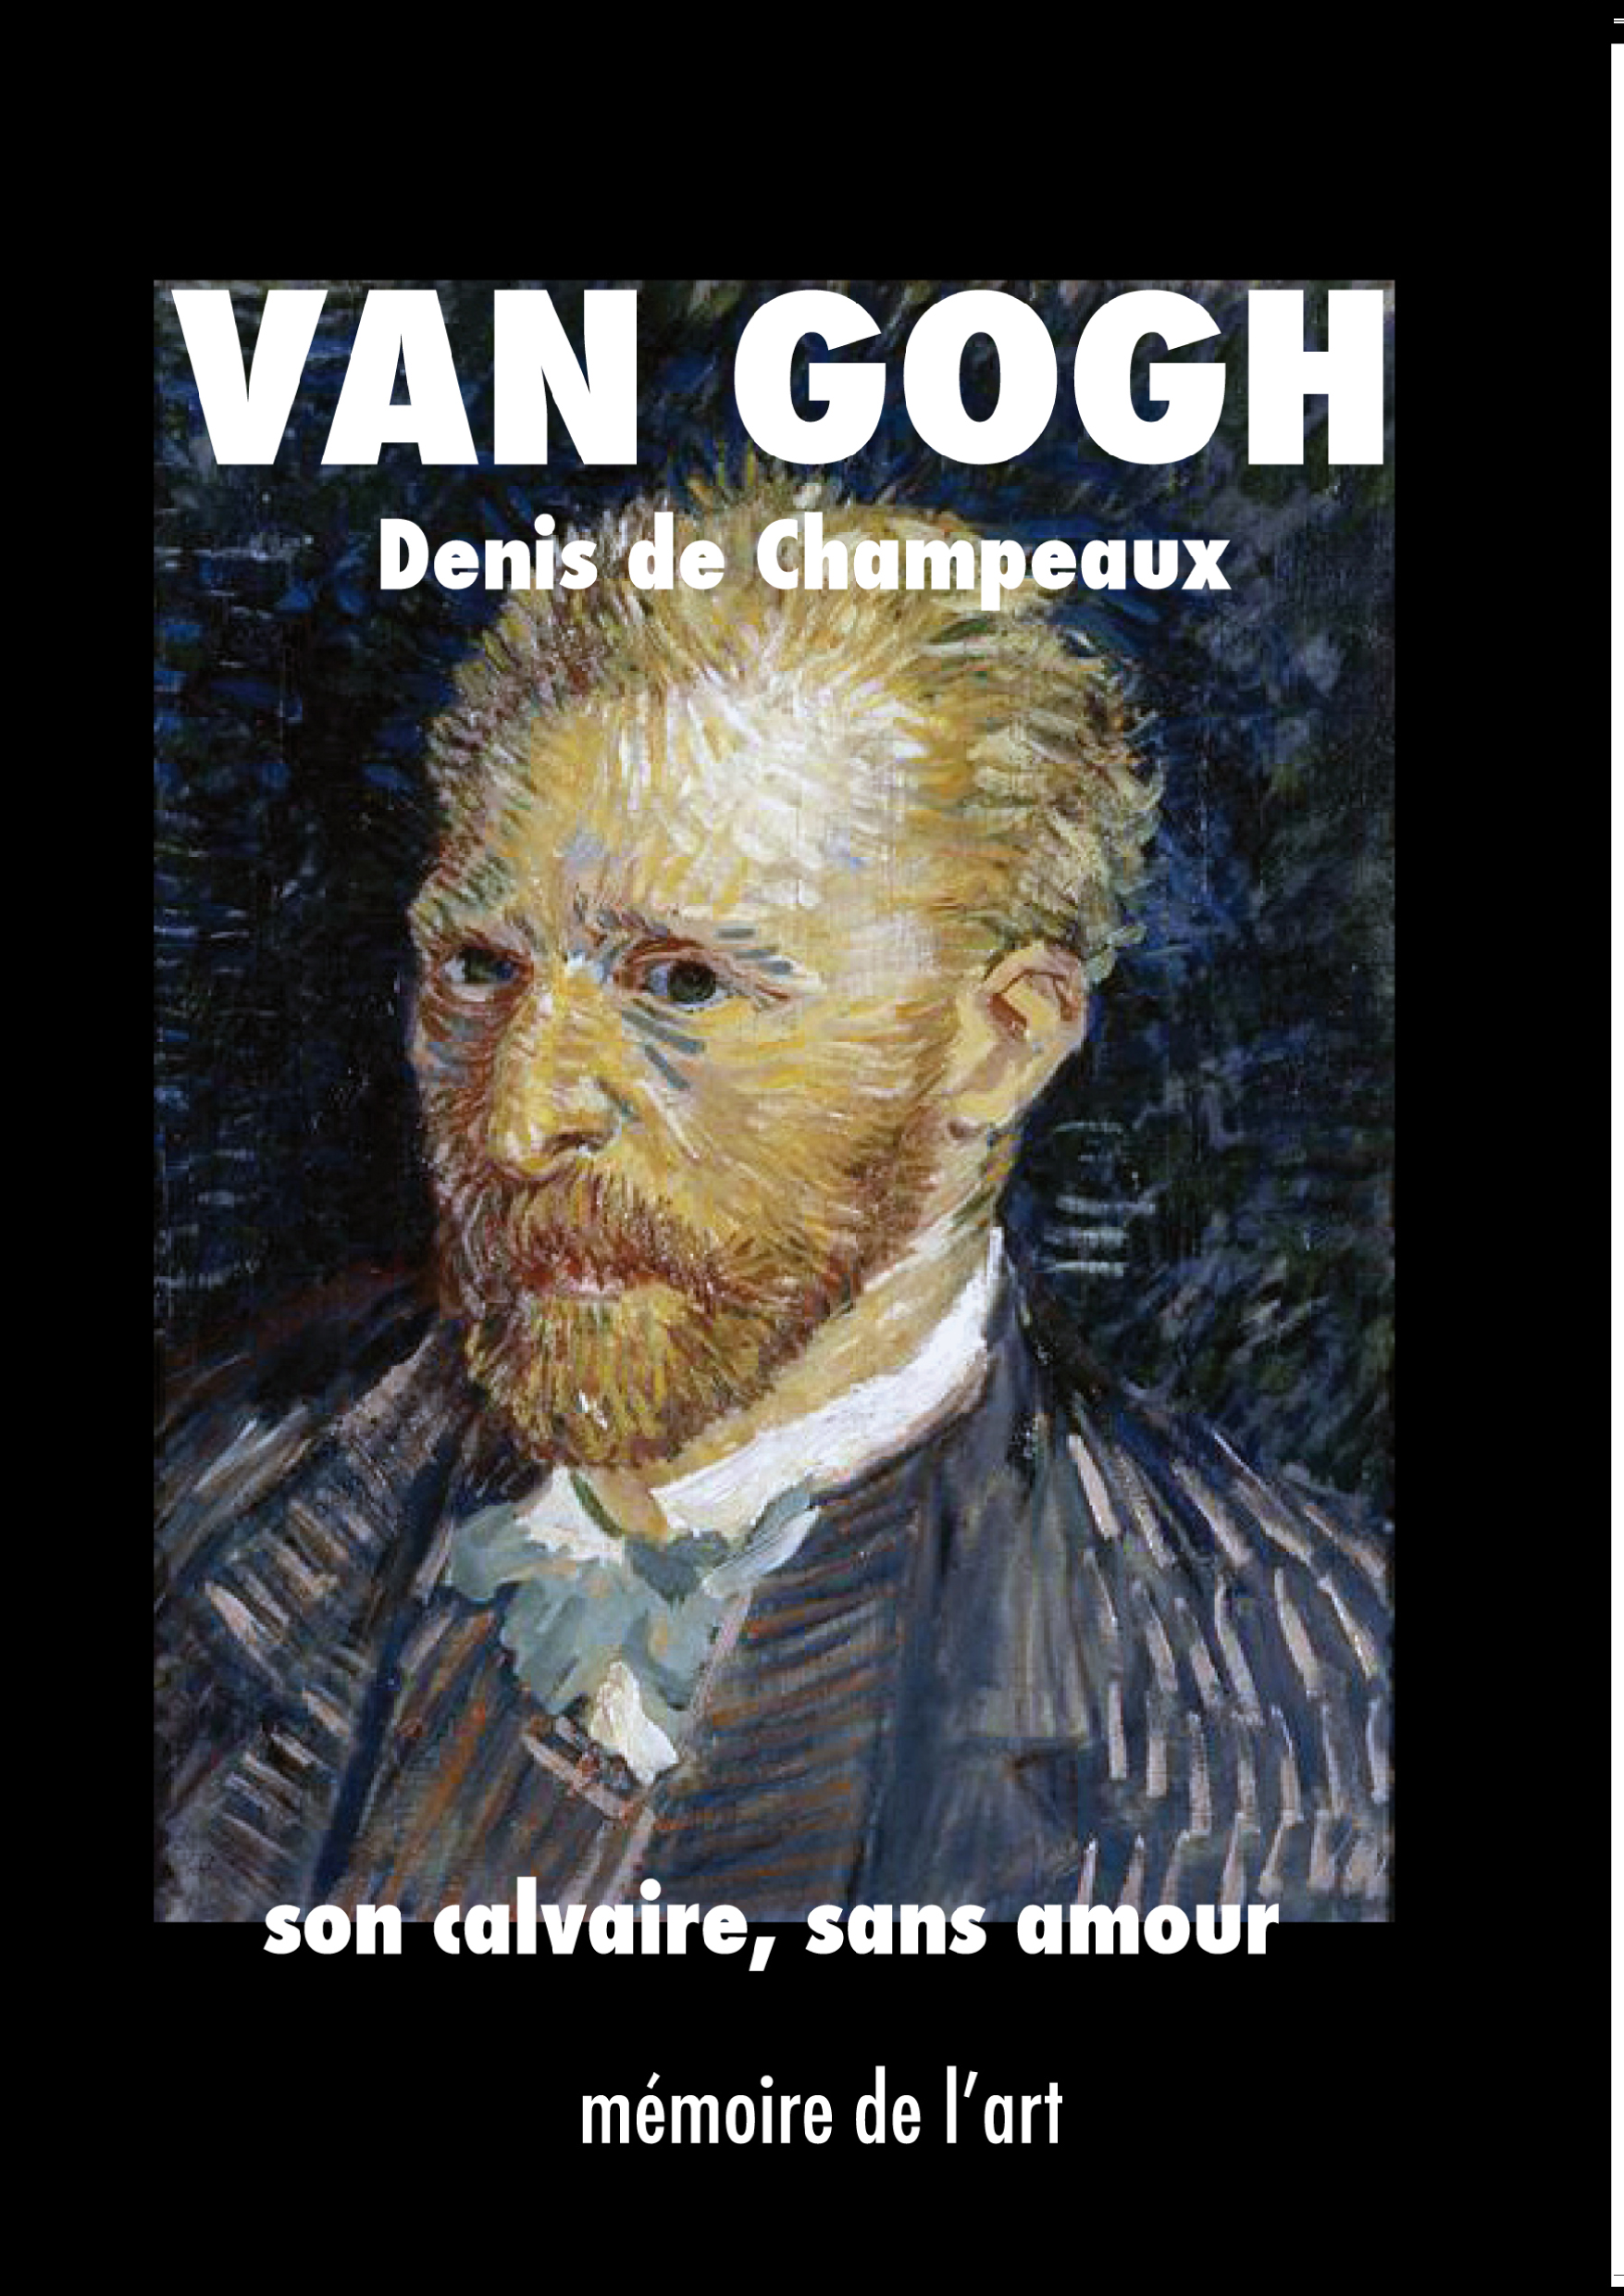 Van Gogh, son calvaire, sans amour